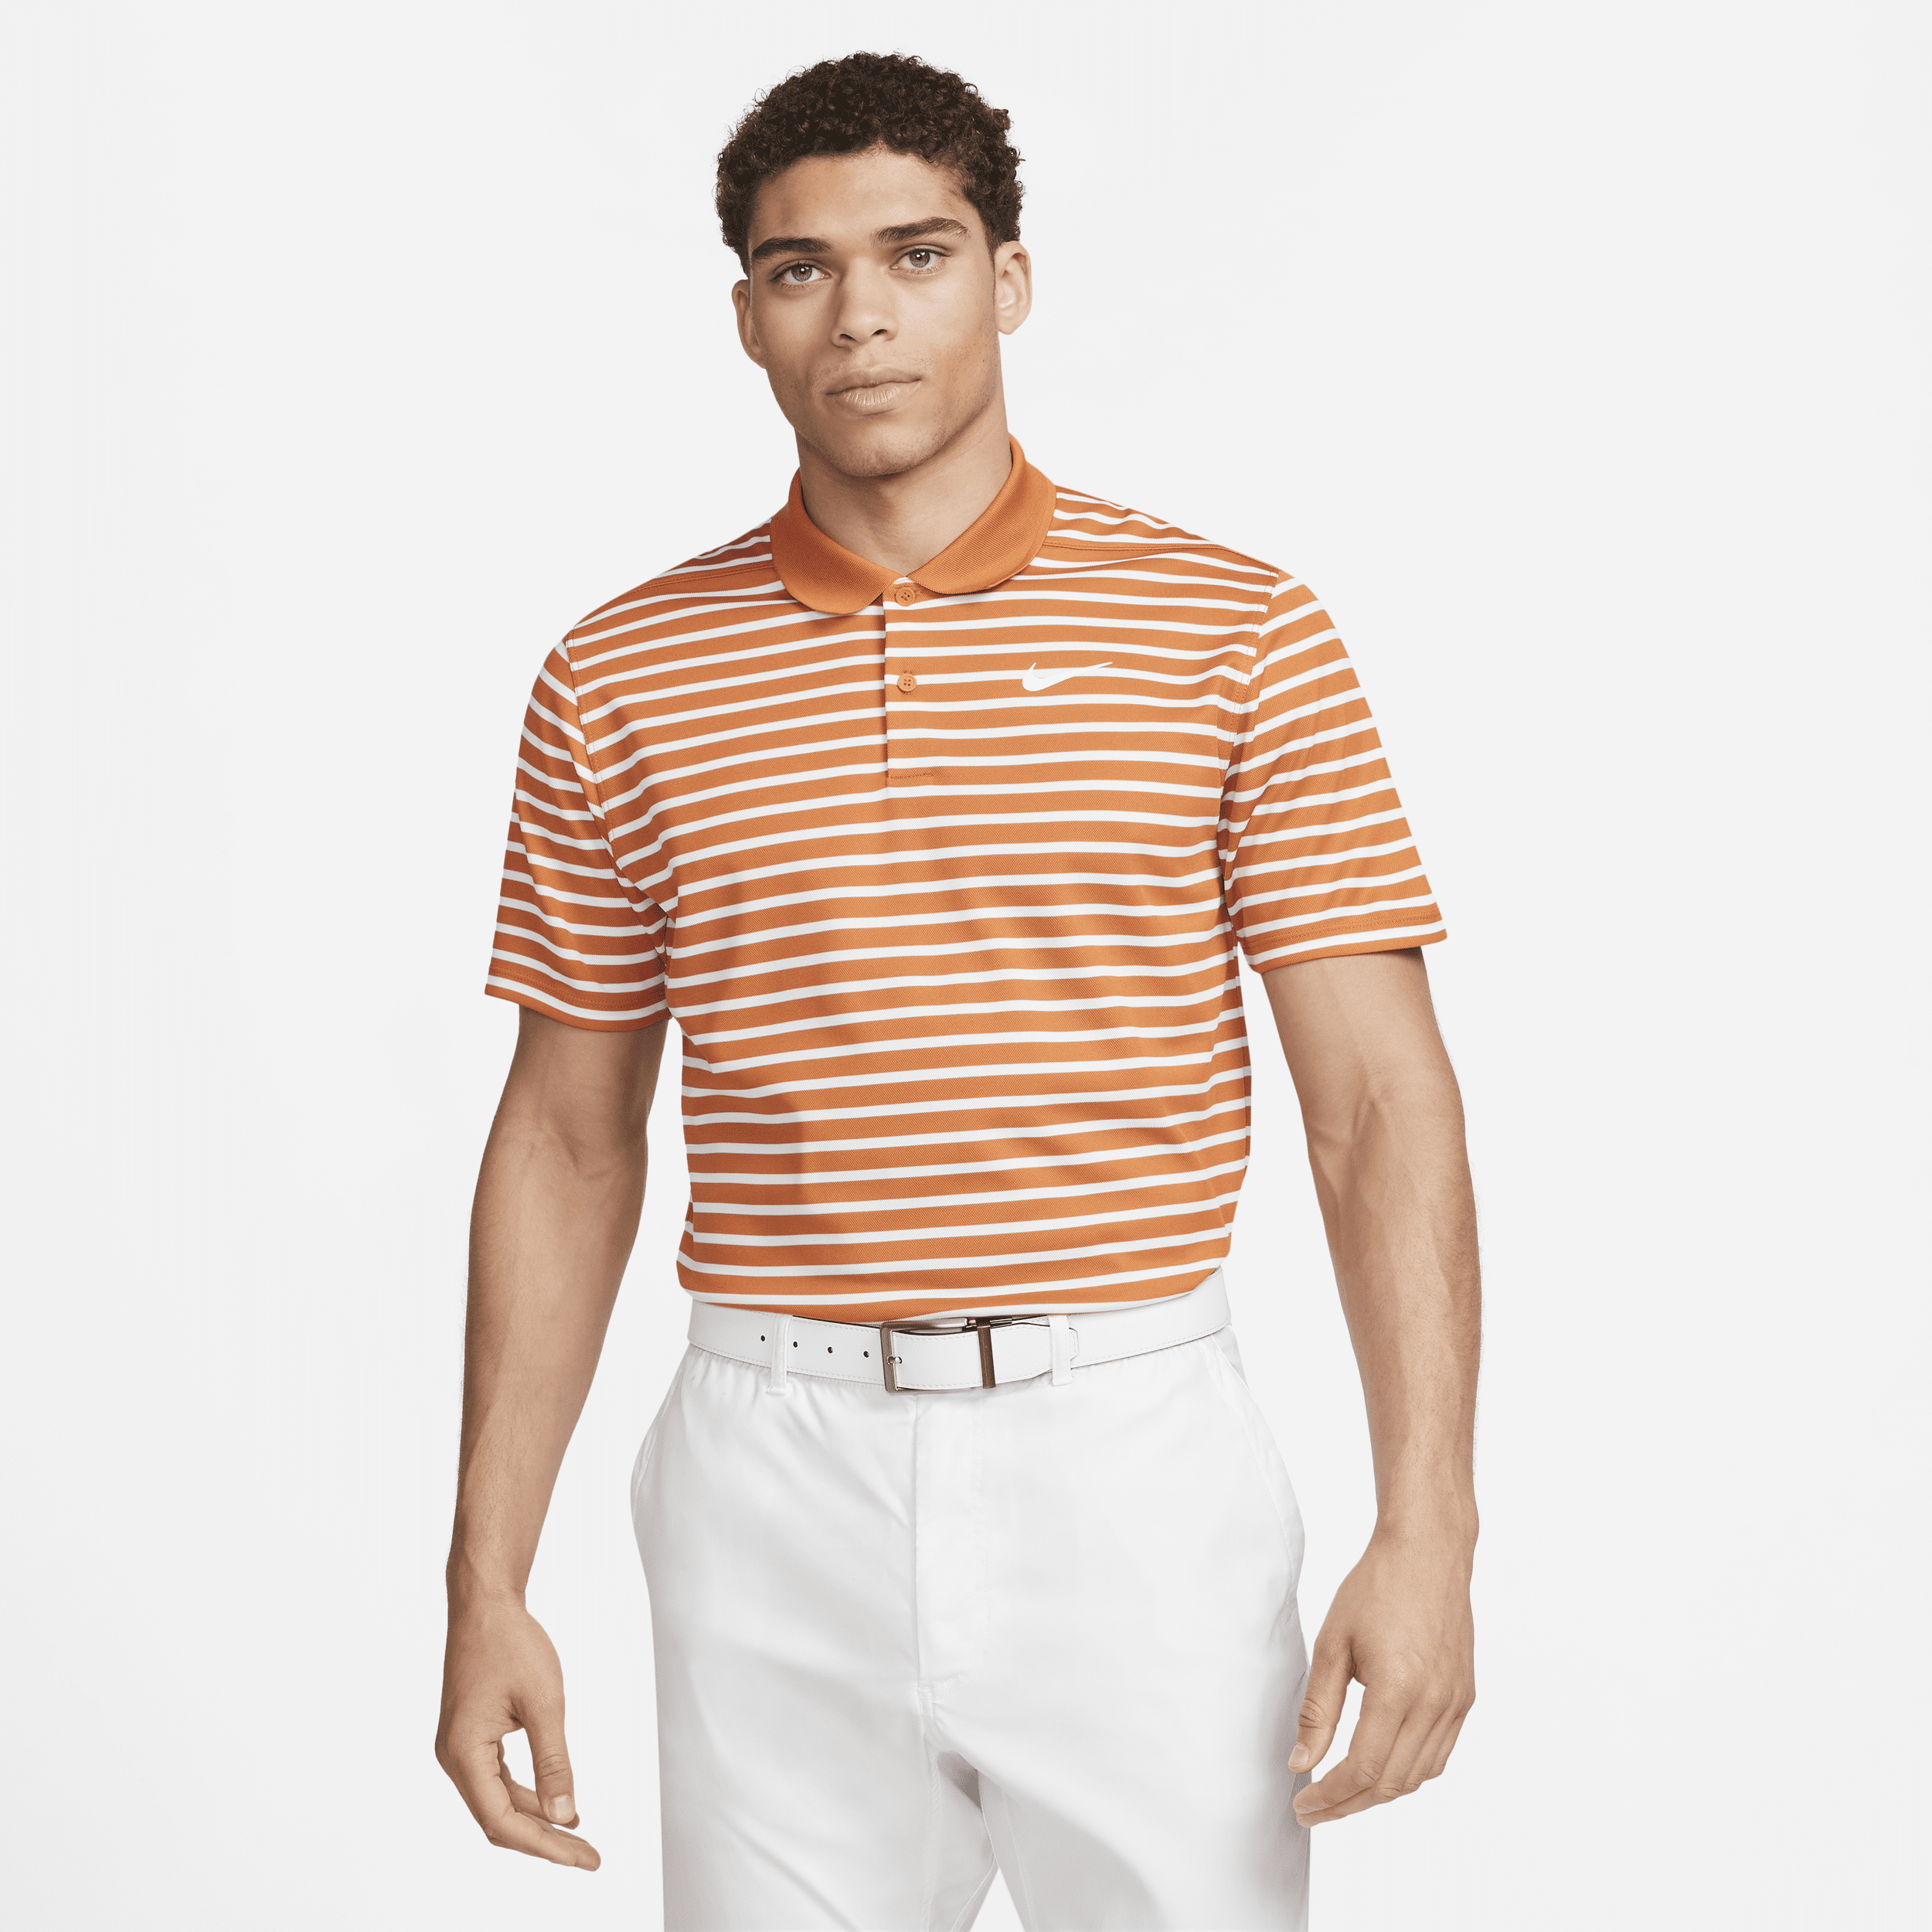 Nike Men's Dri-fit Victory Striped Golf Polo In Orange